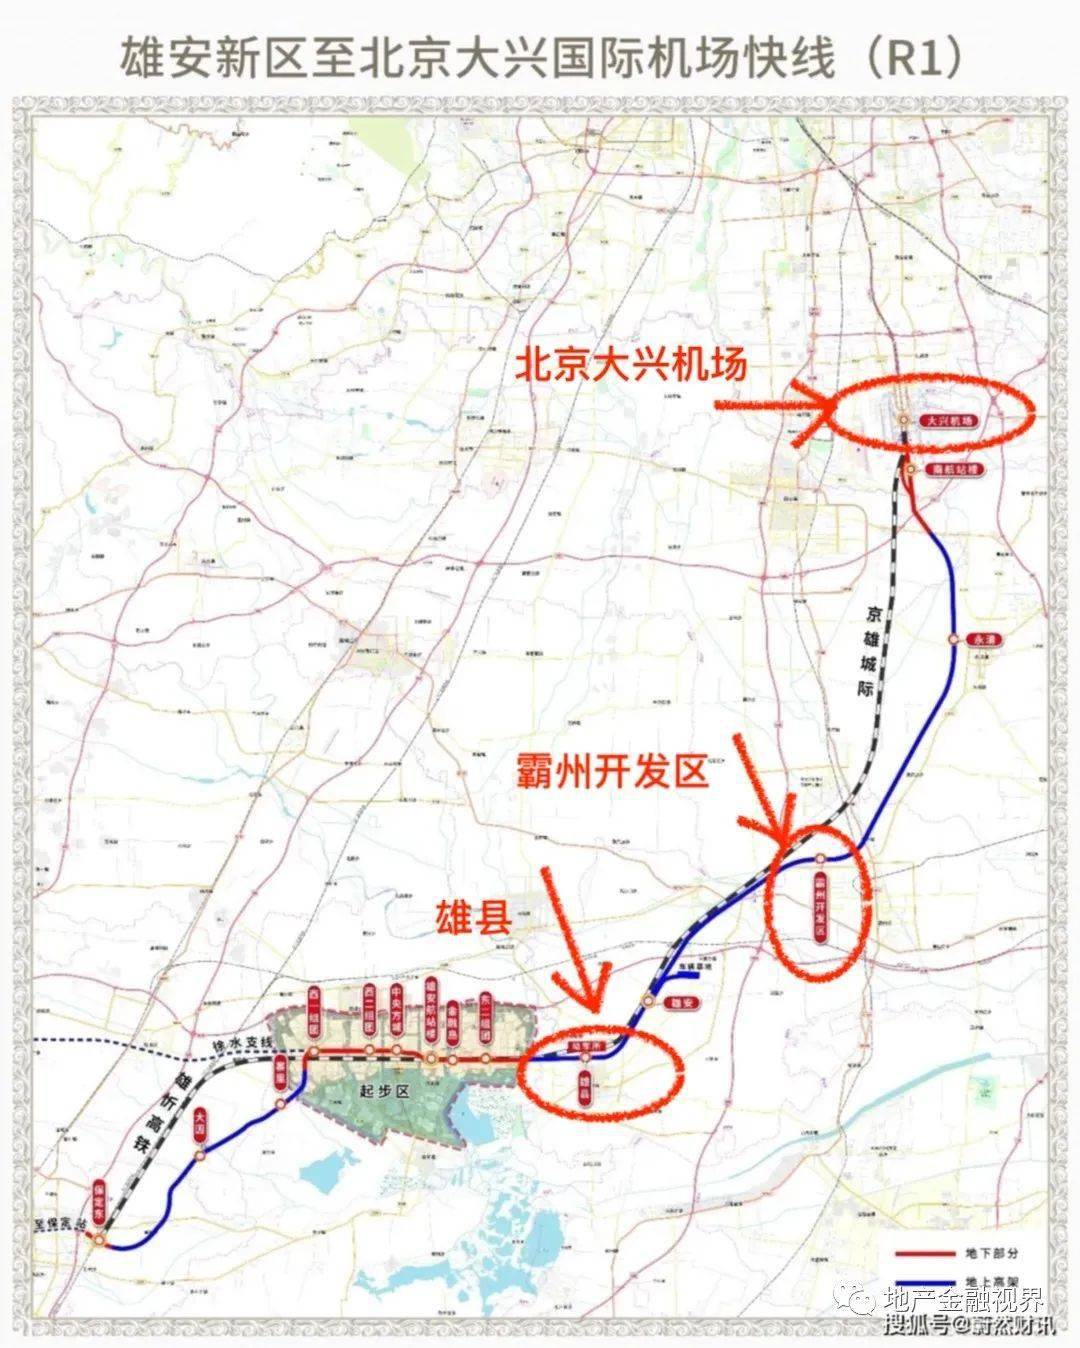 京雄铁路开通,霸州将是下一个赢家?